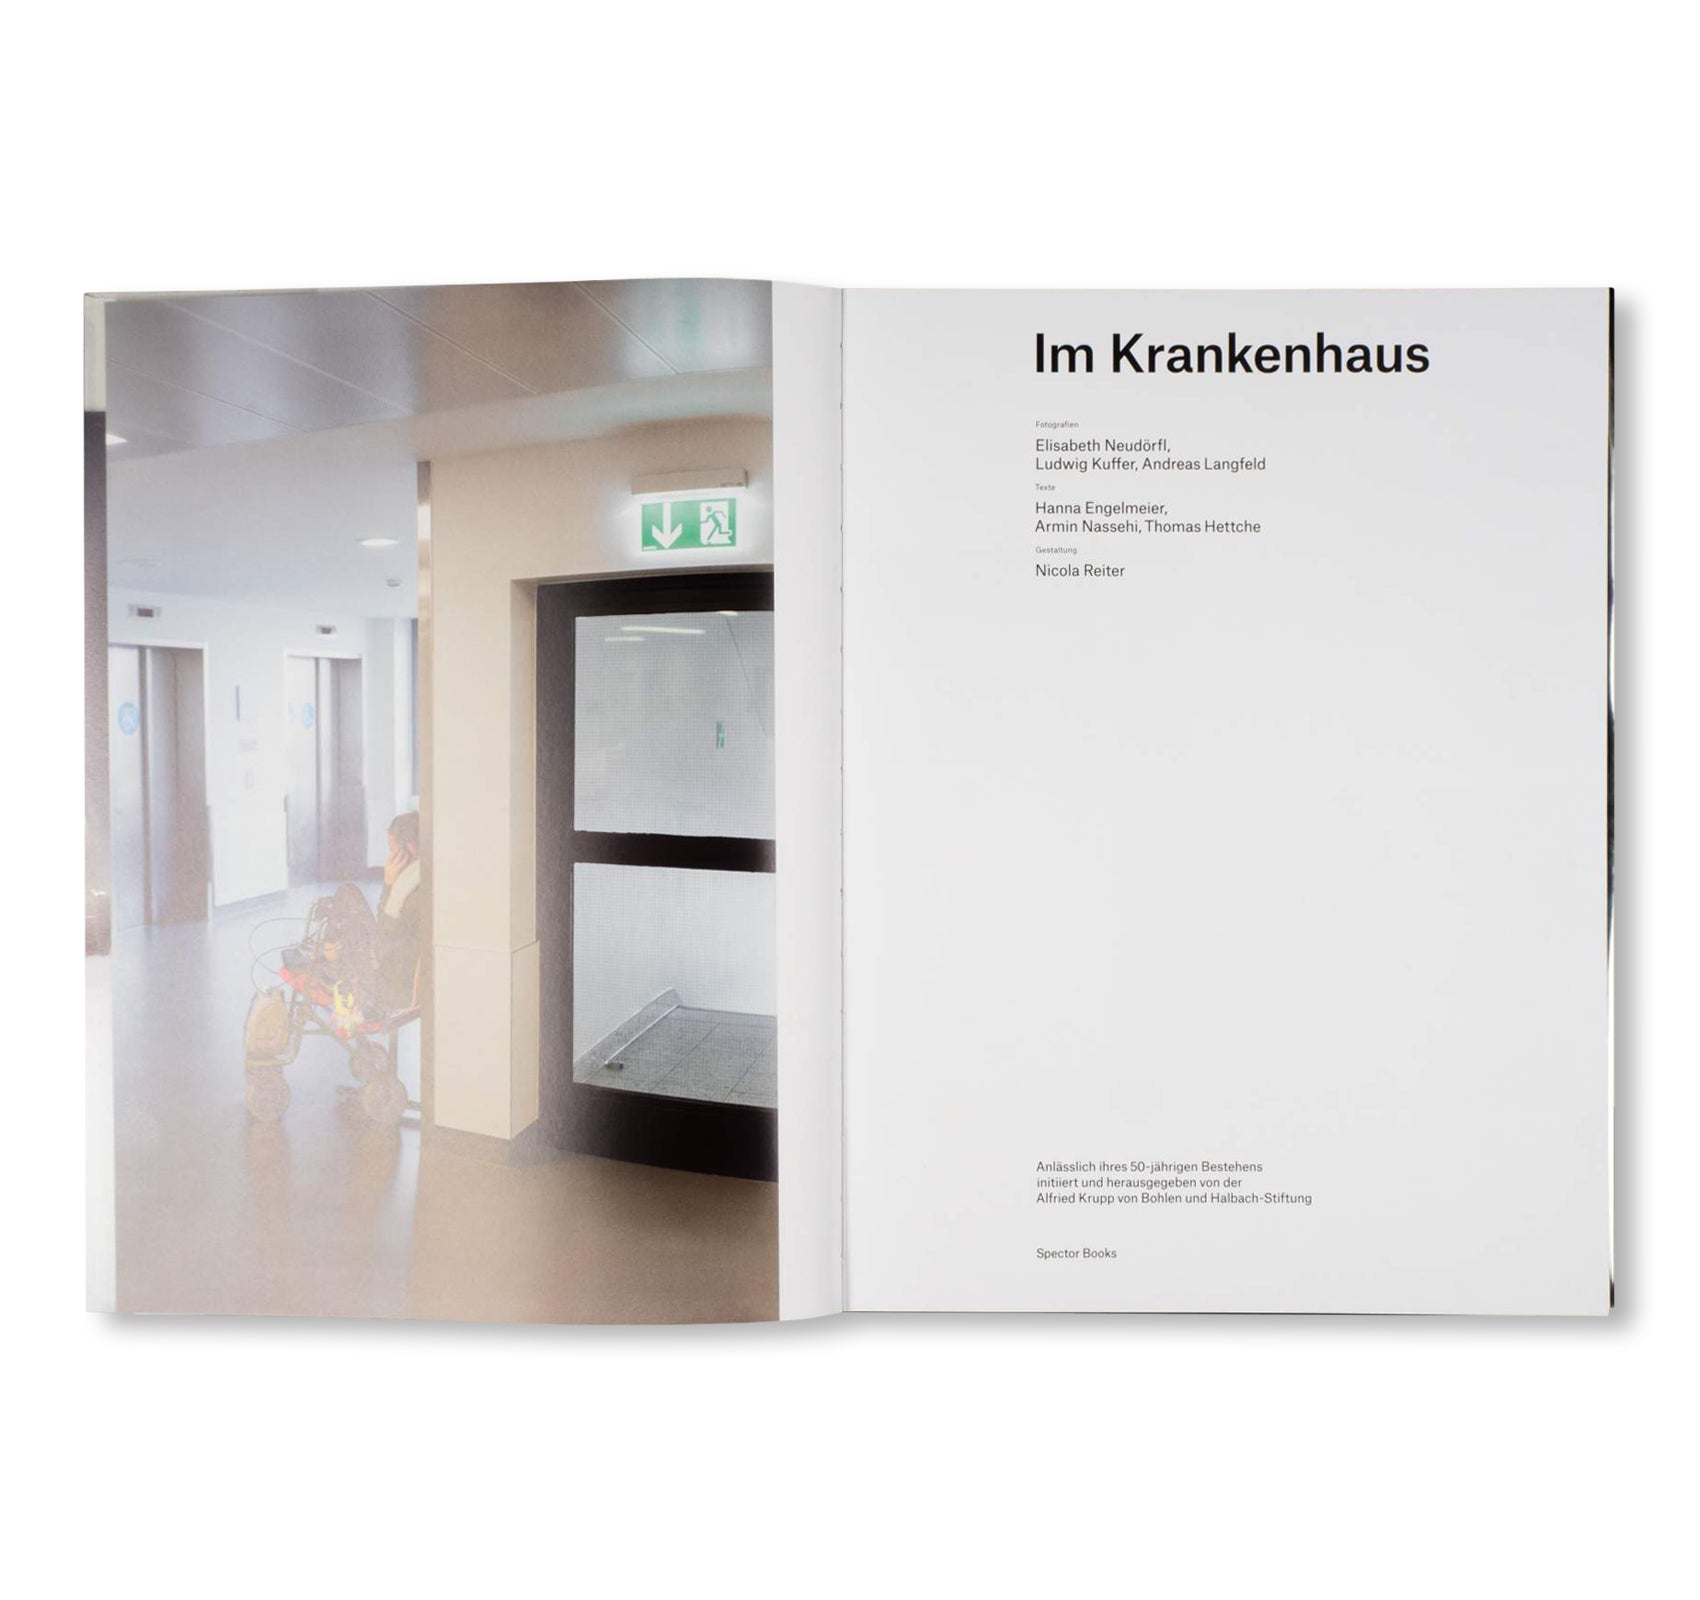 IM KRANKENHAUS (IN HOSPITAL) by Alfried Krupp von Bohlen und Halbach-Stiftung